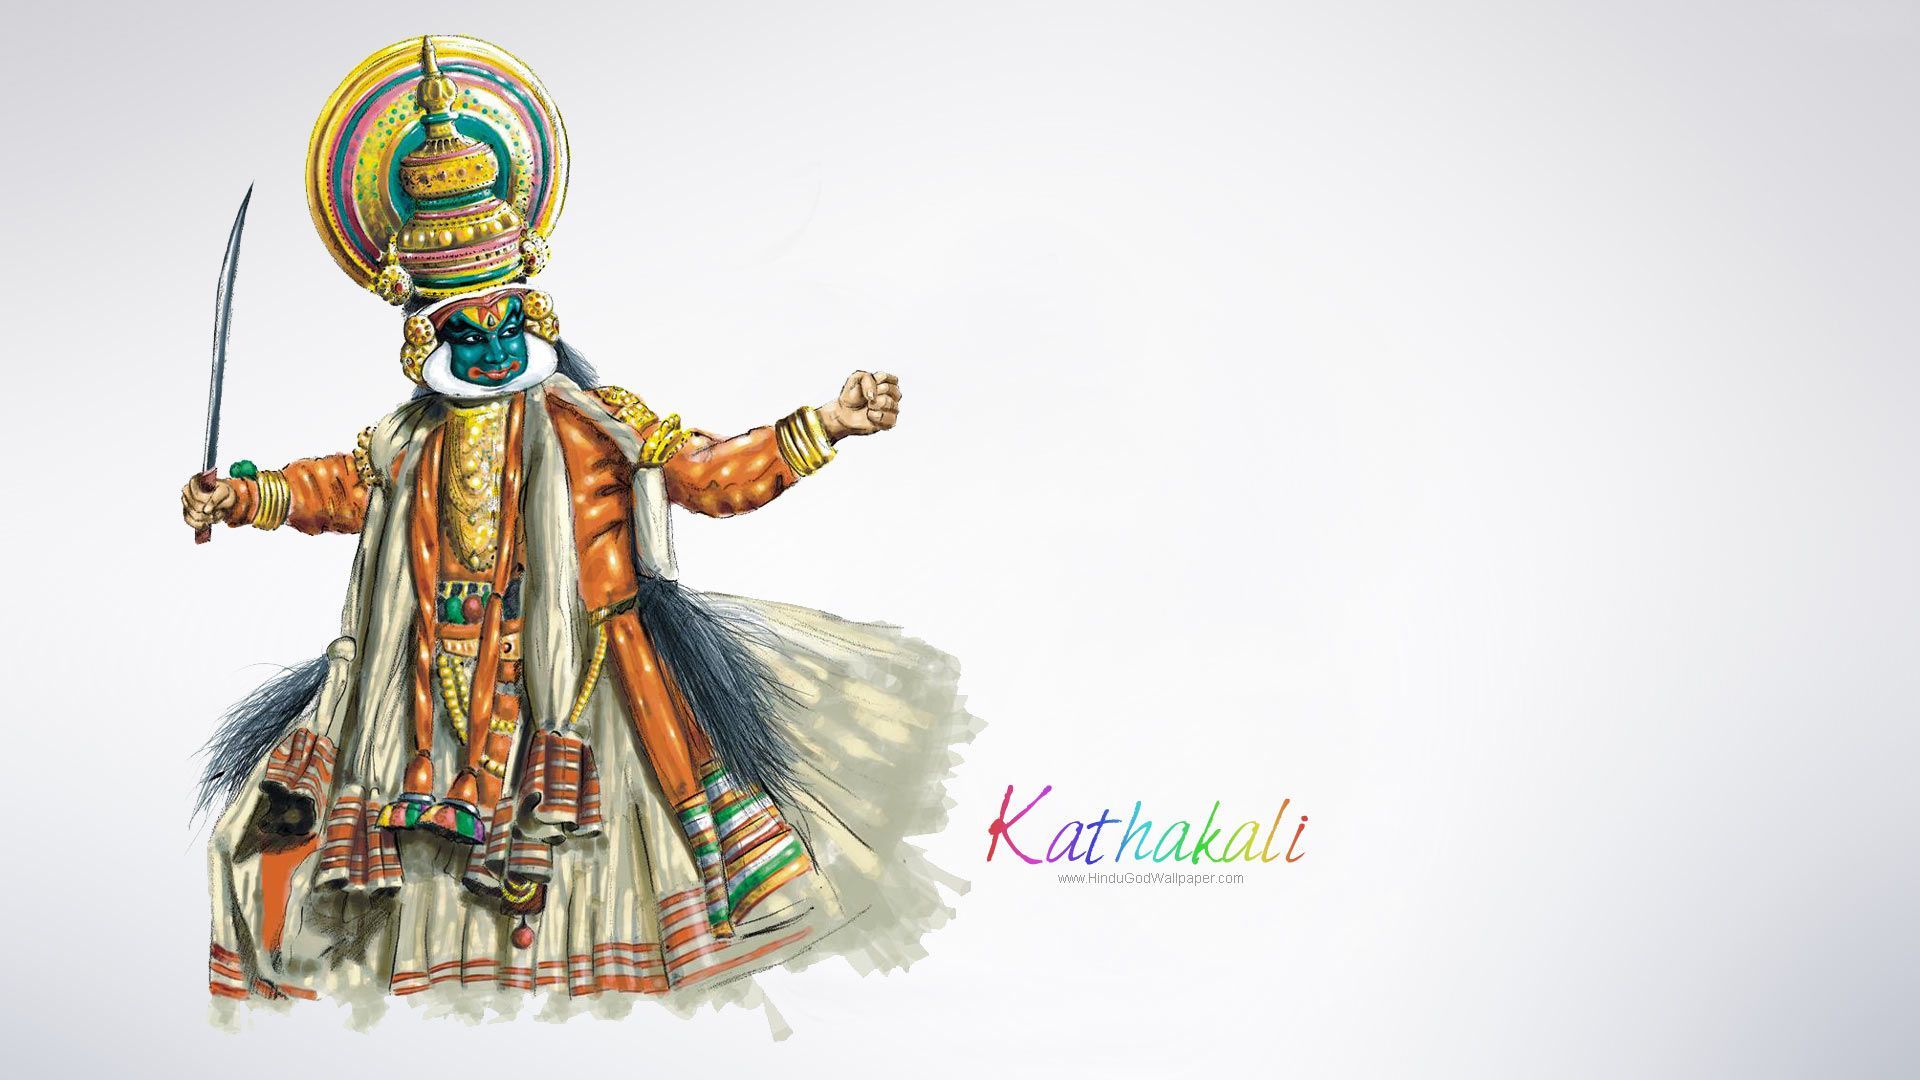 Kathakali HD Wallpaper Free Download. Wallpaper free download, India art, HD wallpaper